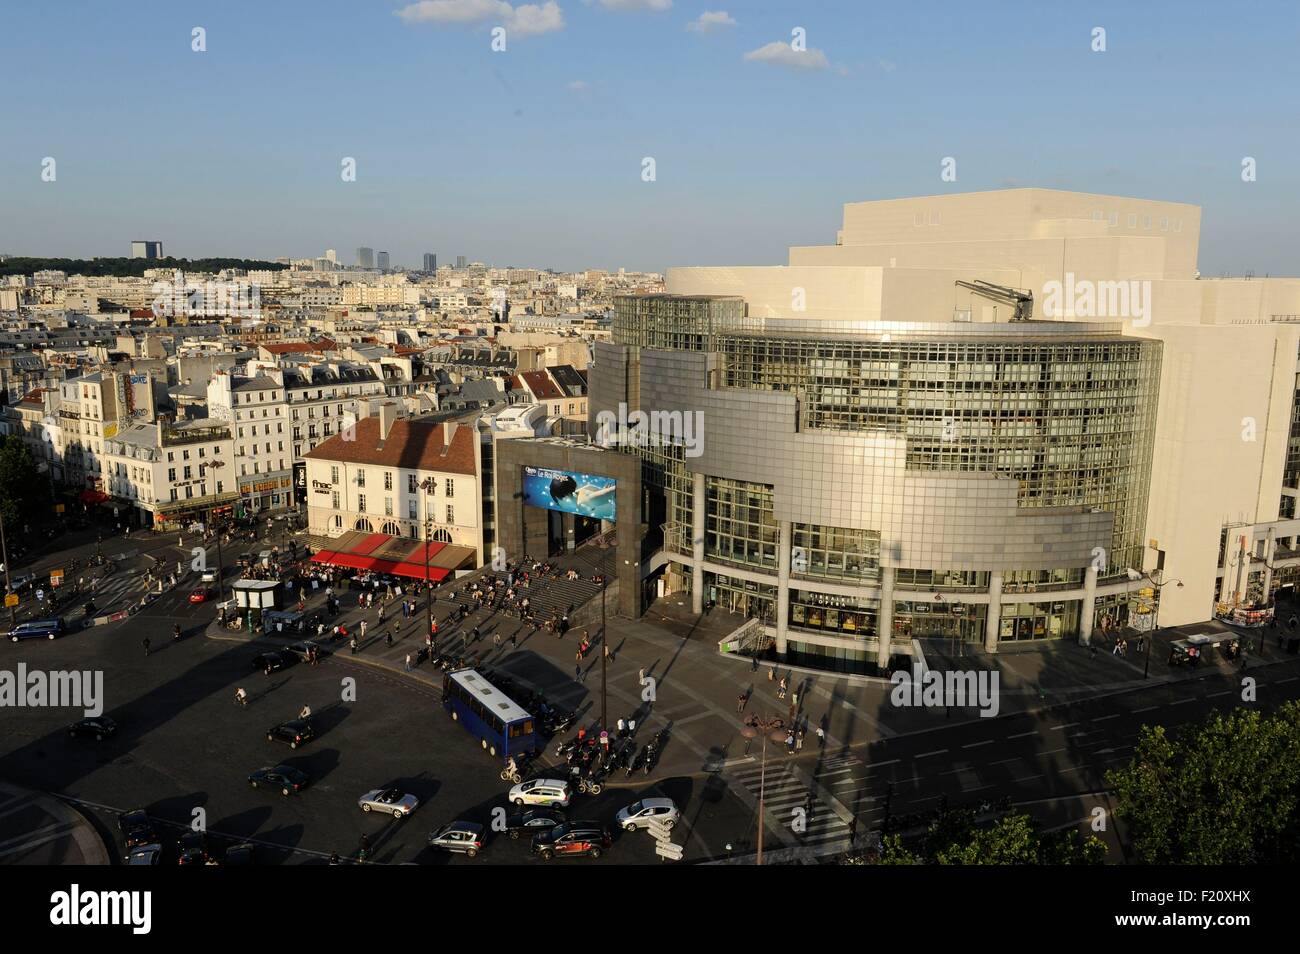 France, Paris, Place de la Bastille and its opera (aerial view) Stock Photo